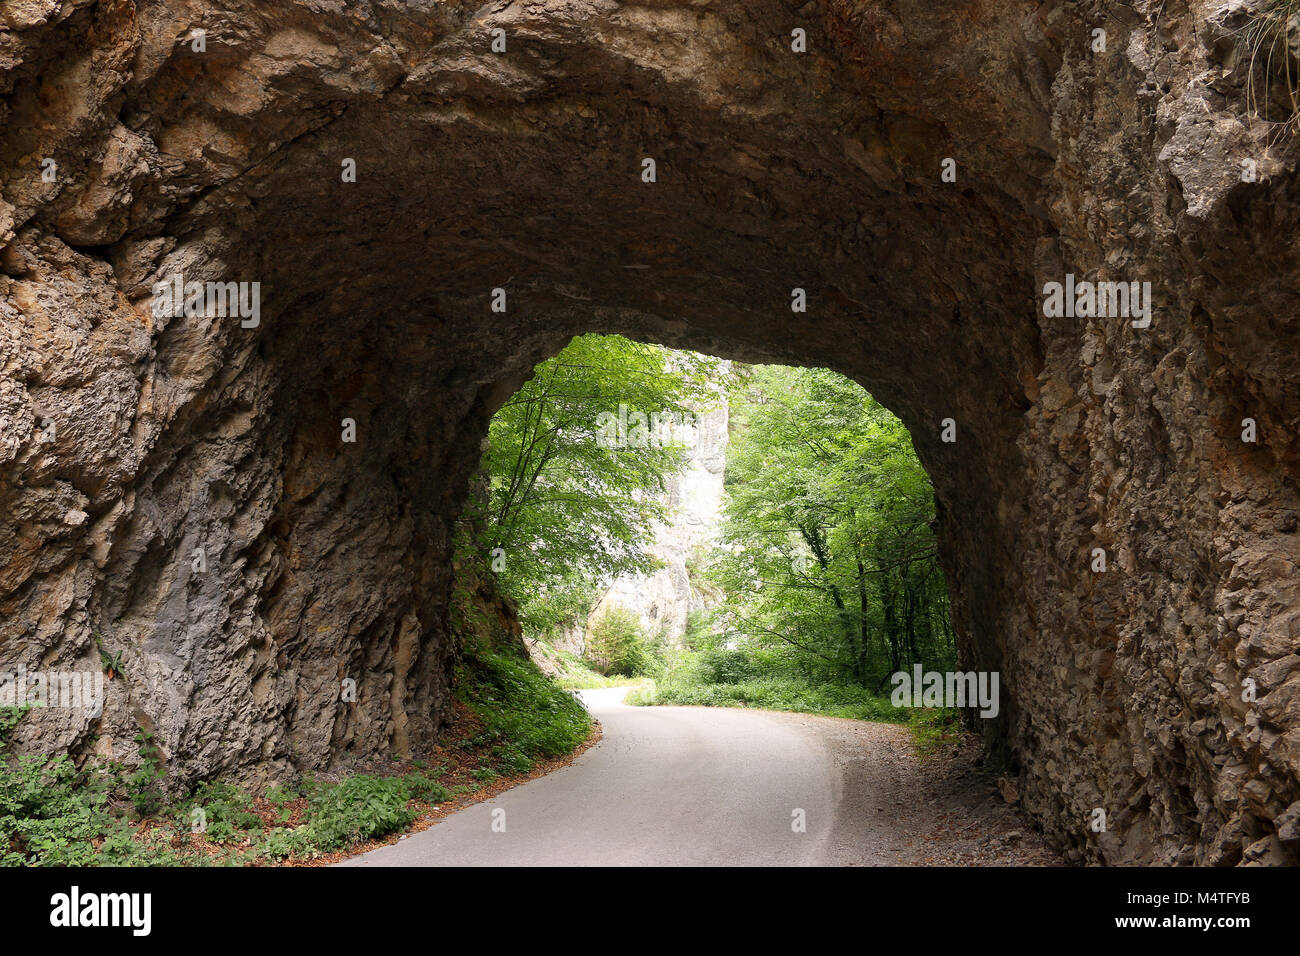 the mountain road passes through a stone tunnel Tara mountain Serbia Stock Photo